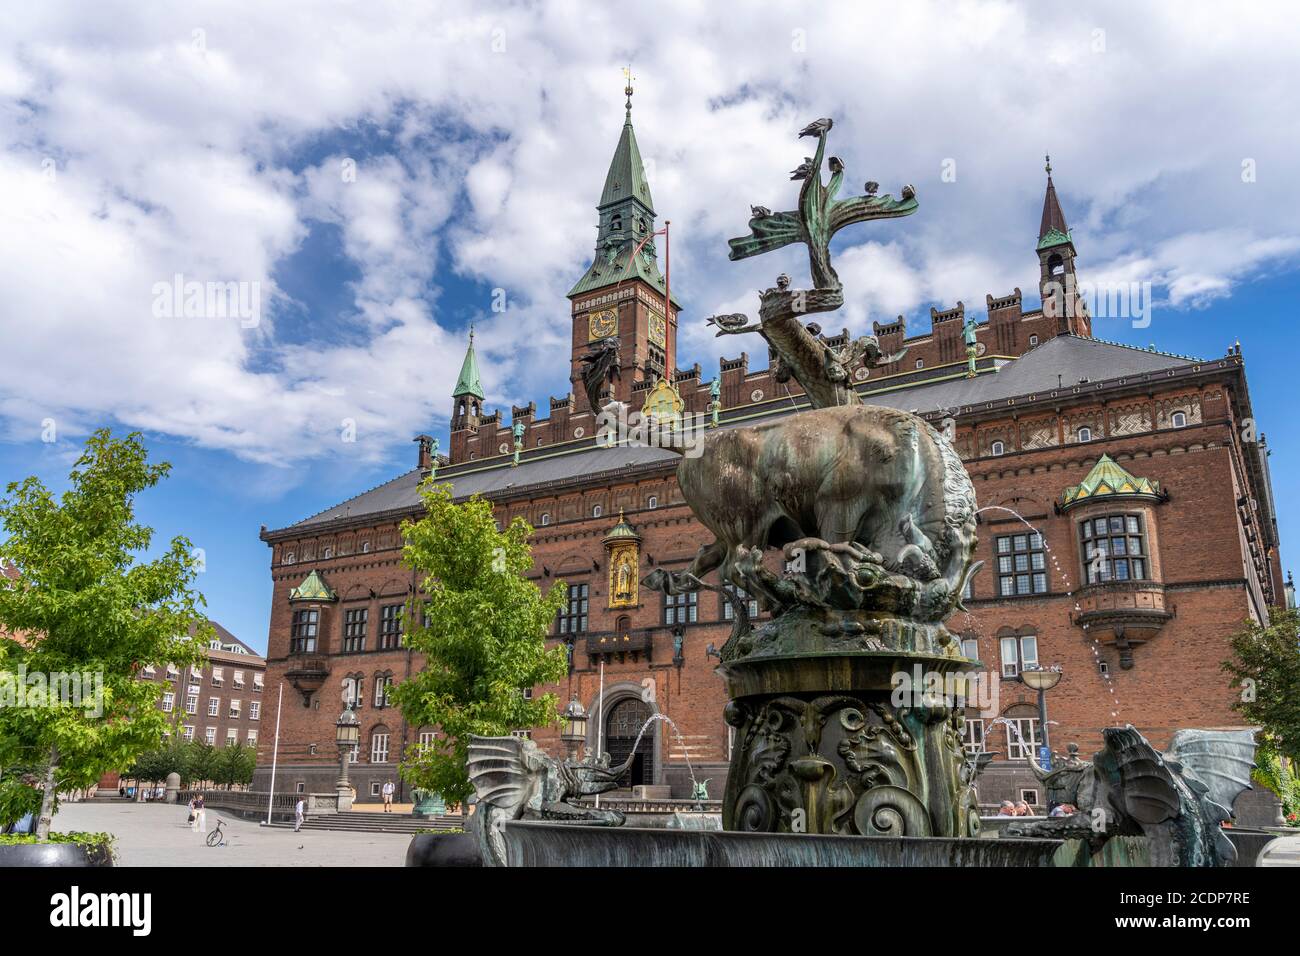 Der Drachenspringbrunnen  Dragespringvand und das Kopenhagener Rathaus, Kopenhagen, Dänemark, Europa |  The Dragon Fountain  Dragespringvandet and the Stock Photo